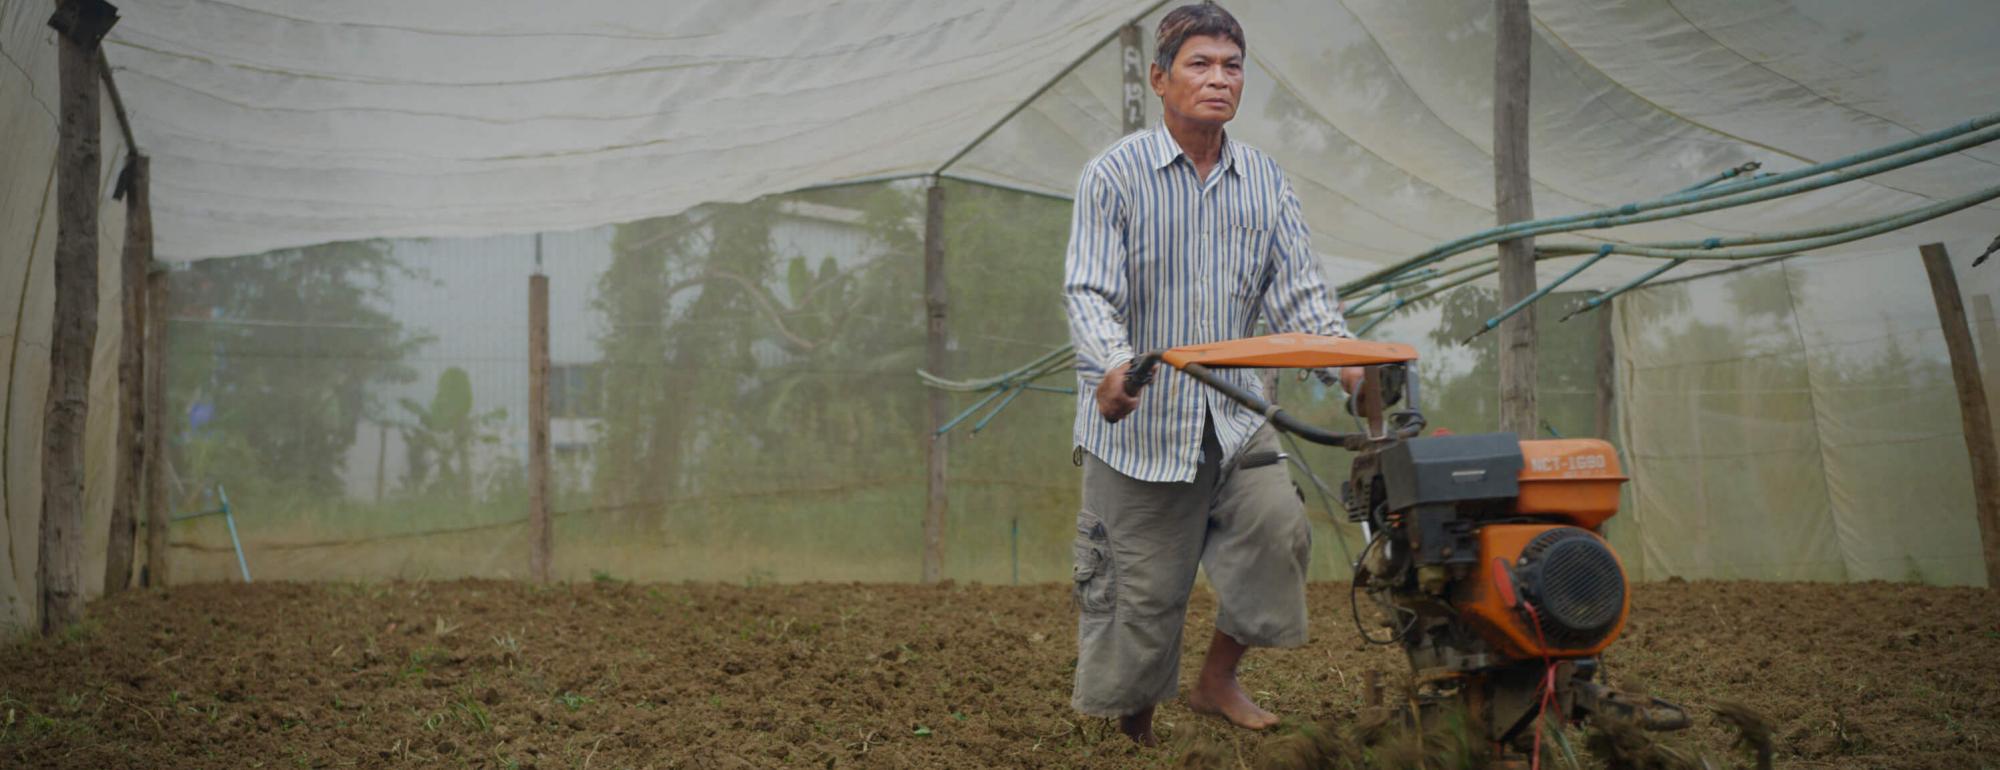 cambodian farmer working in field